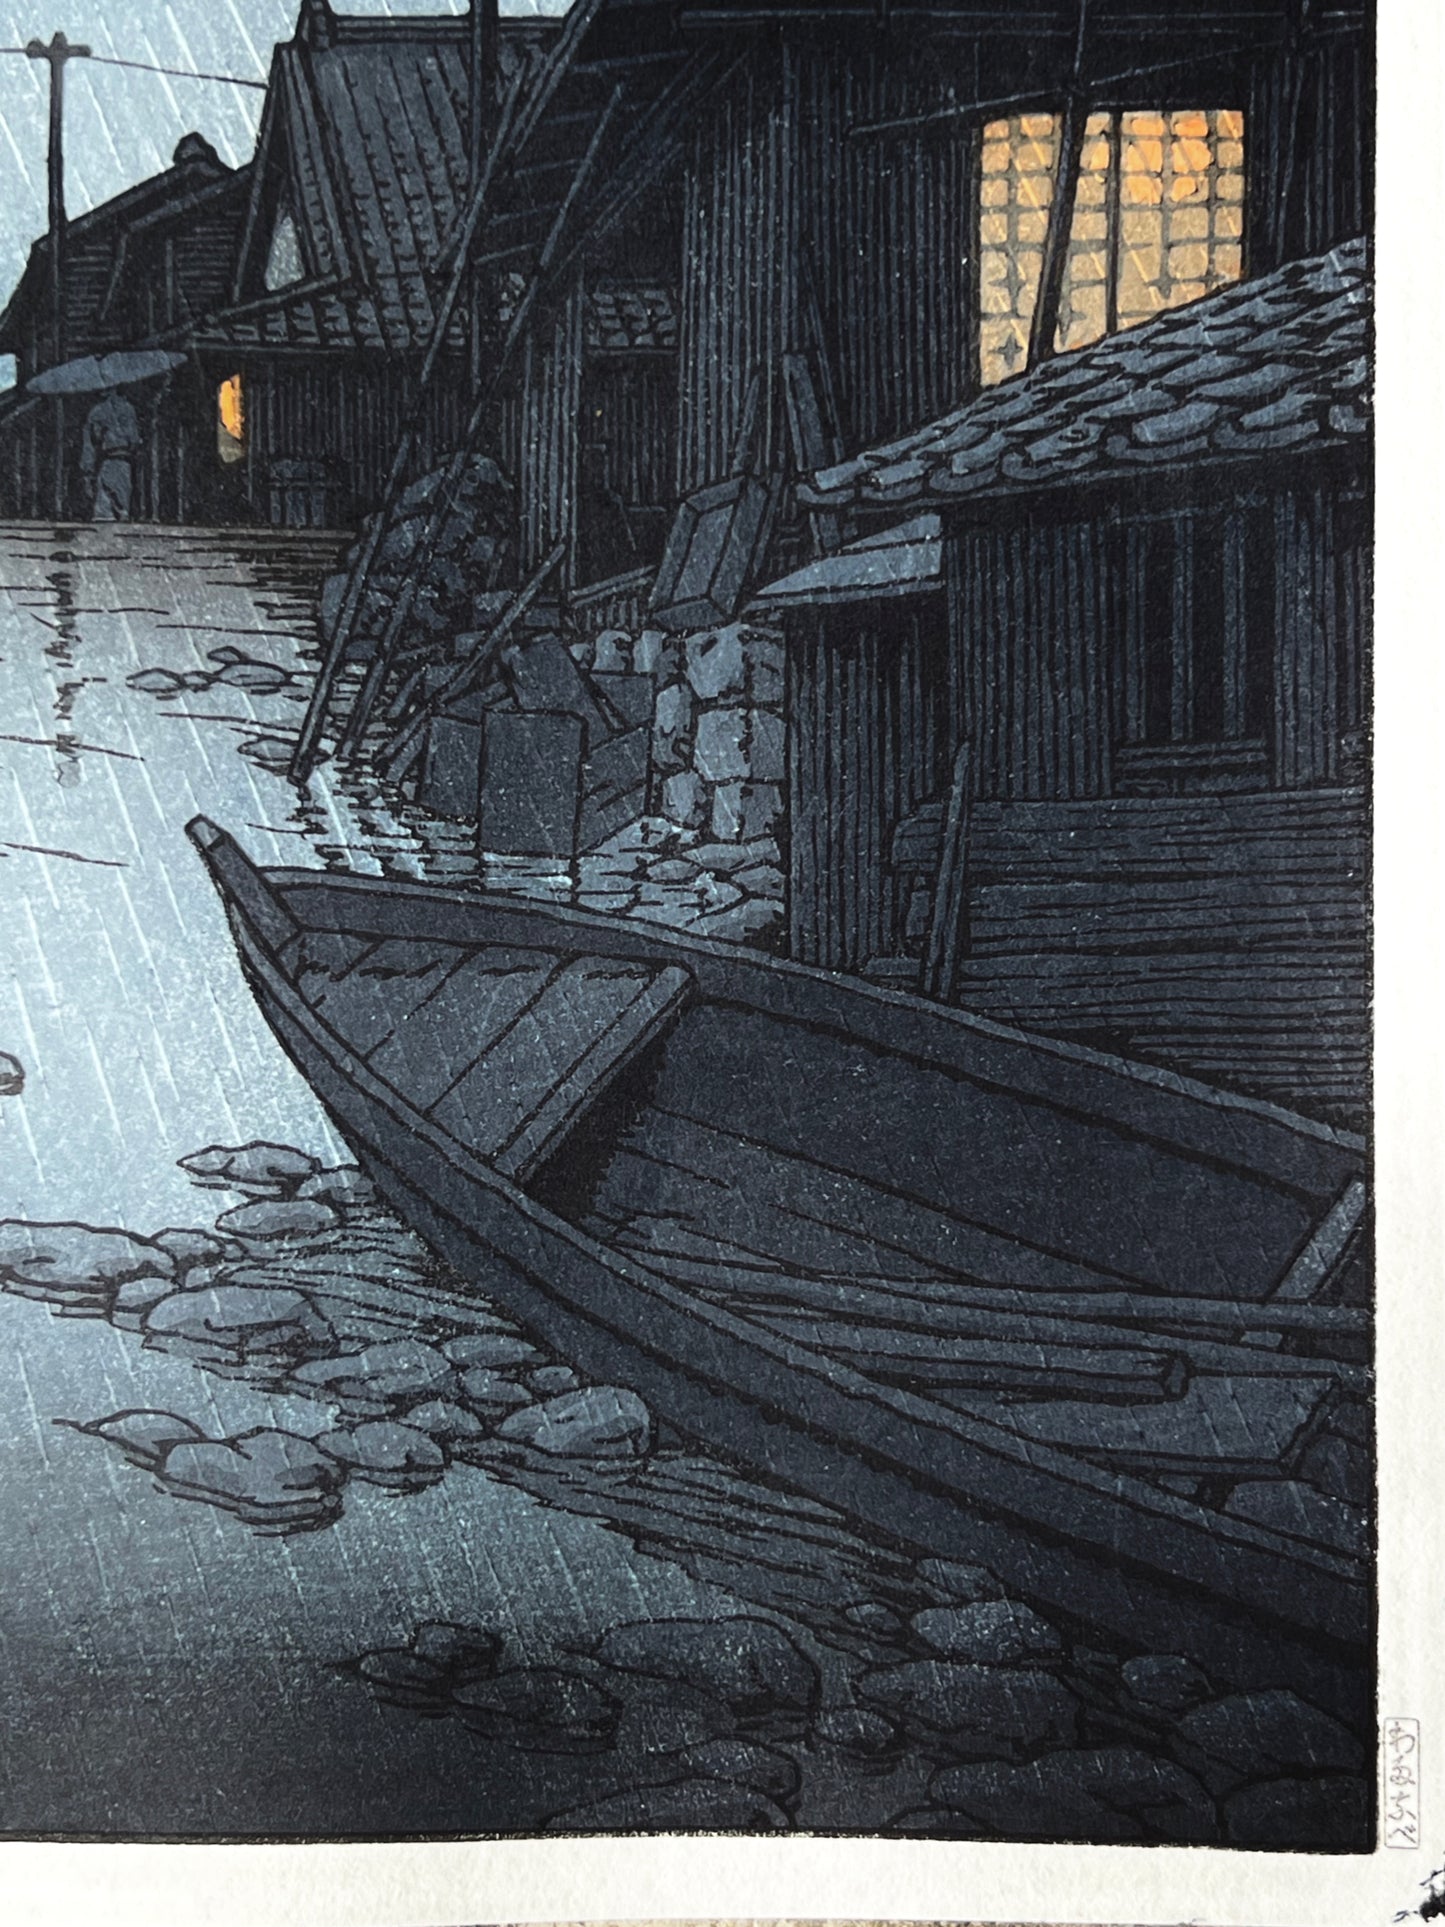 nuit, la pluie tombe sur la rue du village de Kawarako, reflet de l'eau, maisons éclairées, barque en premier plan barque